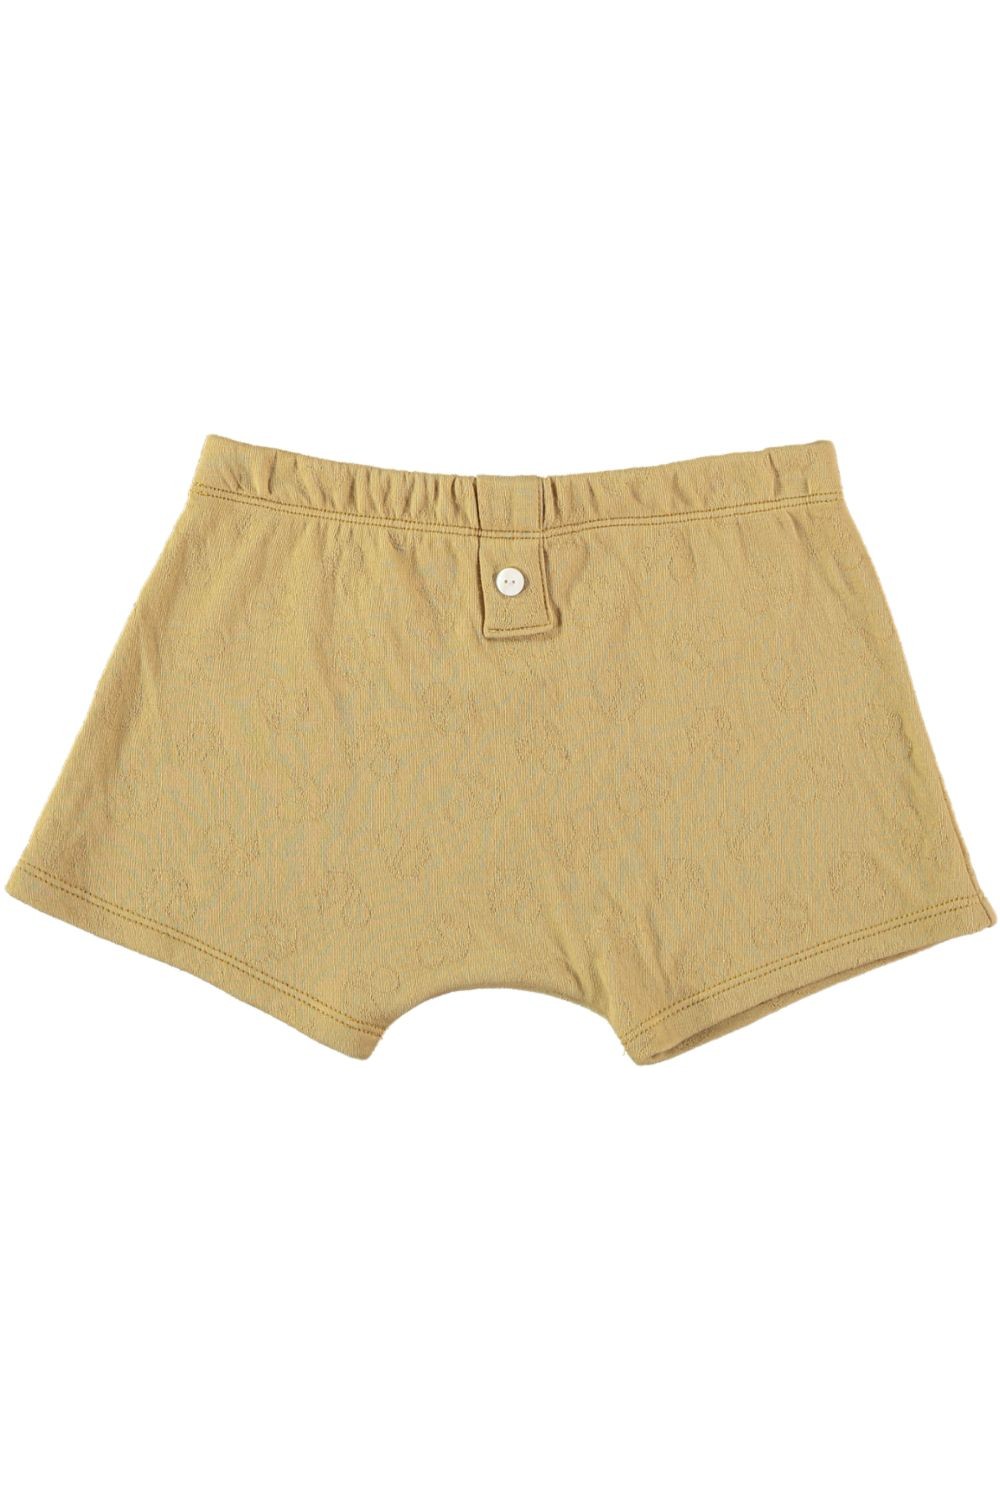 100% organic cotton Nano boxers for boys, honey - Risu Risu - Risu-Risu